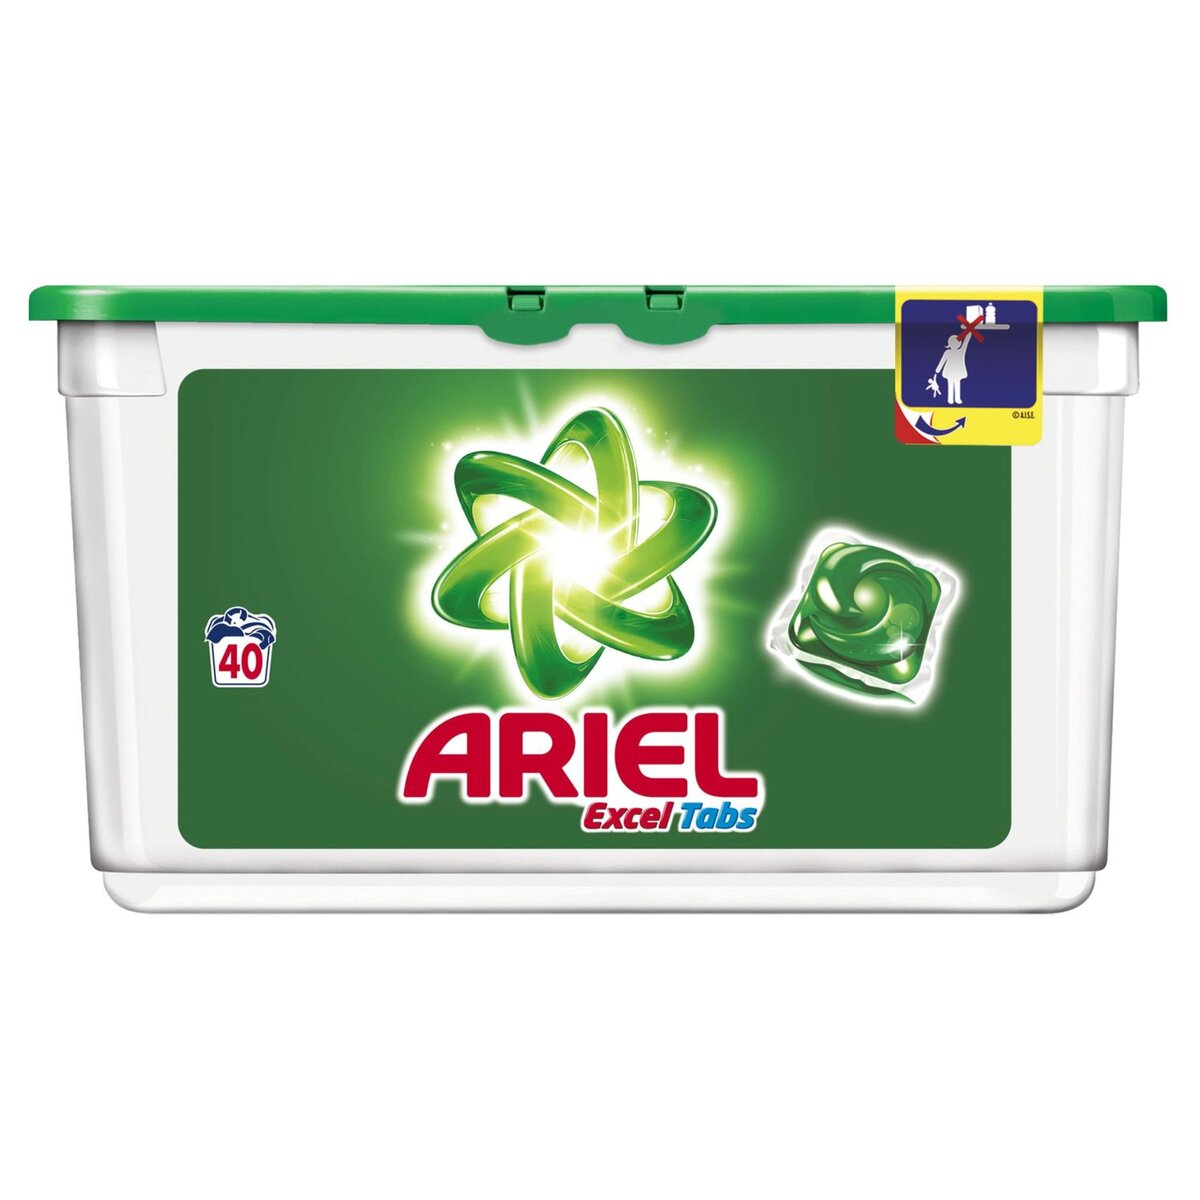 ARIEL Ariel Excel Tabs Lessive capsules original 40 lavages 40 lavages 40 capsules